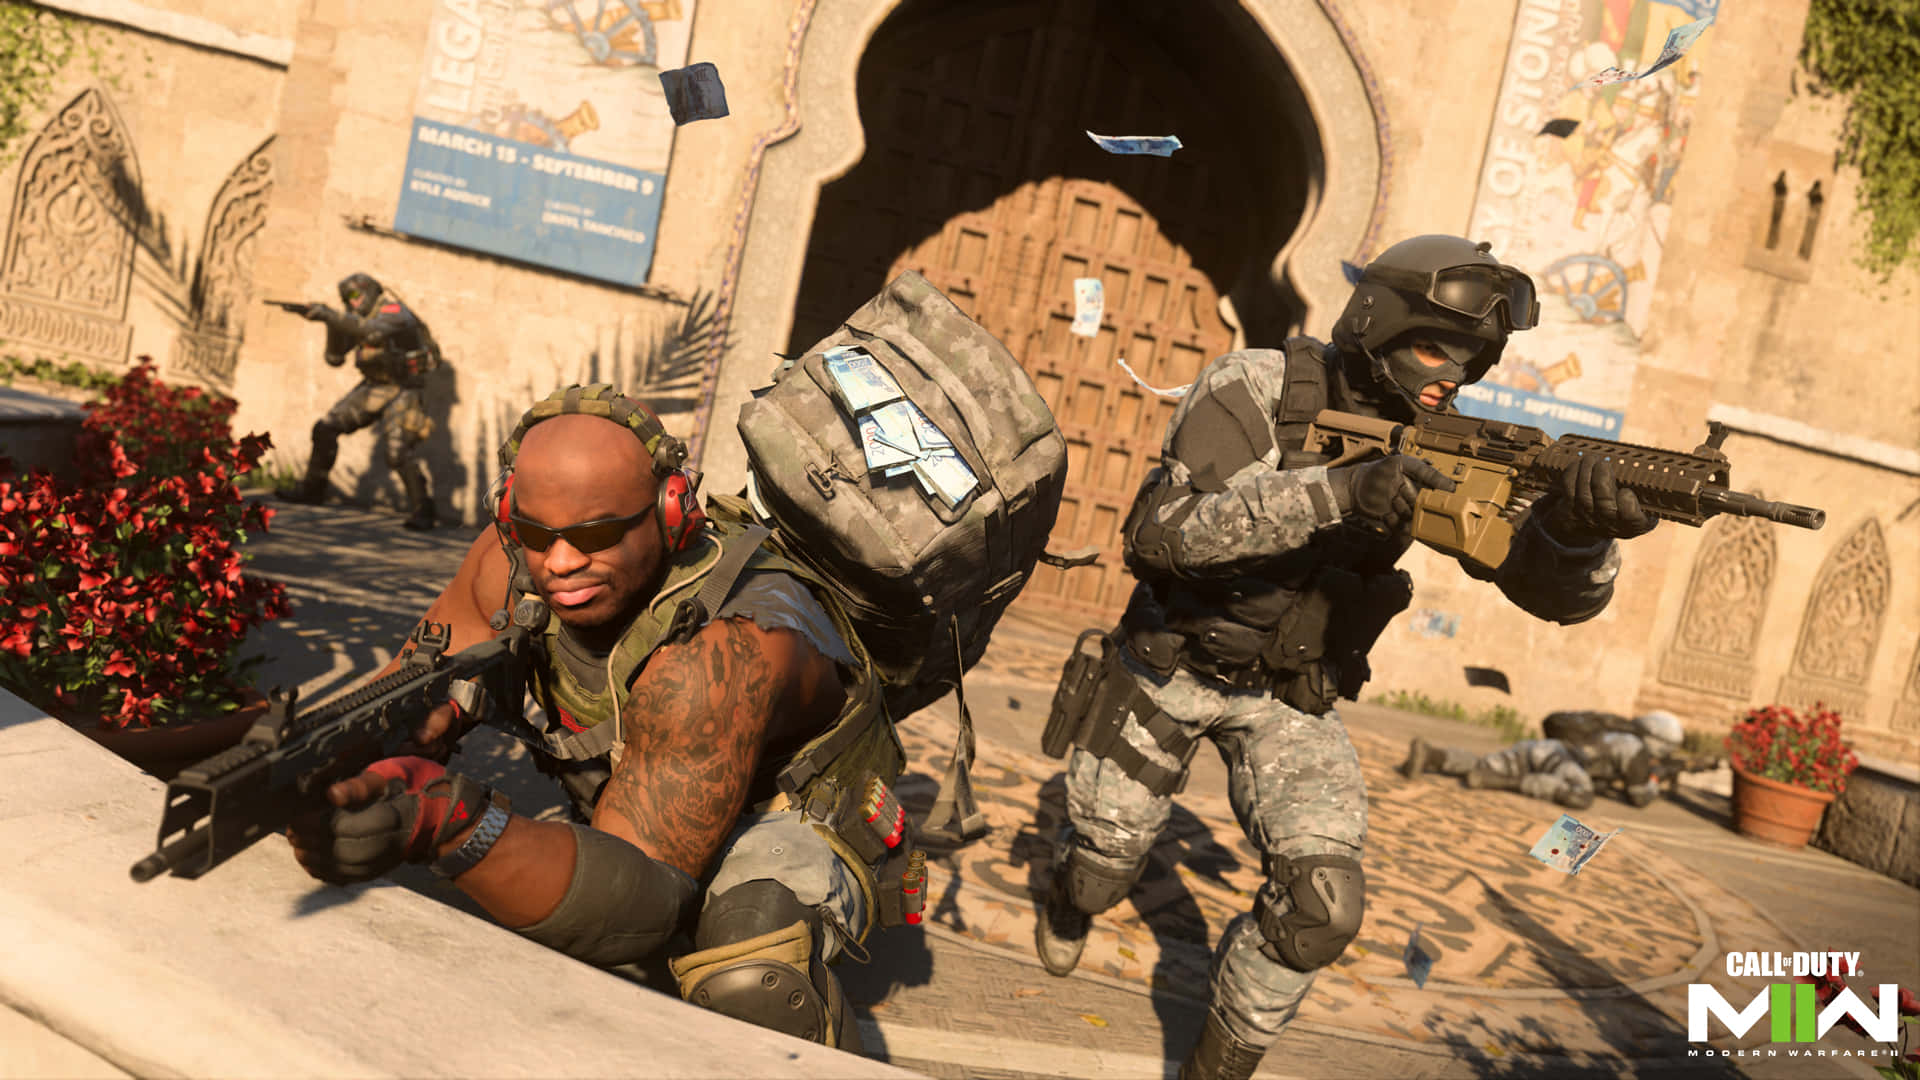 Viviun Realismo Senza Precedenti Nel Miglior Call Of Duty: Black Ops 4.